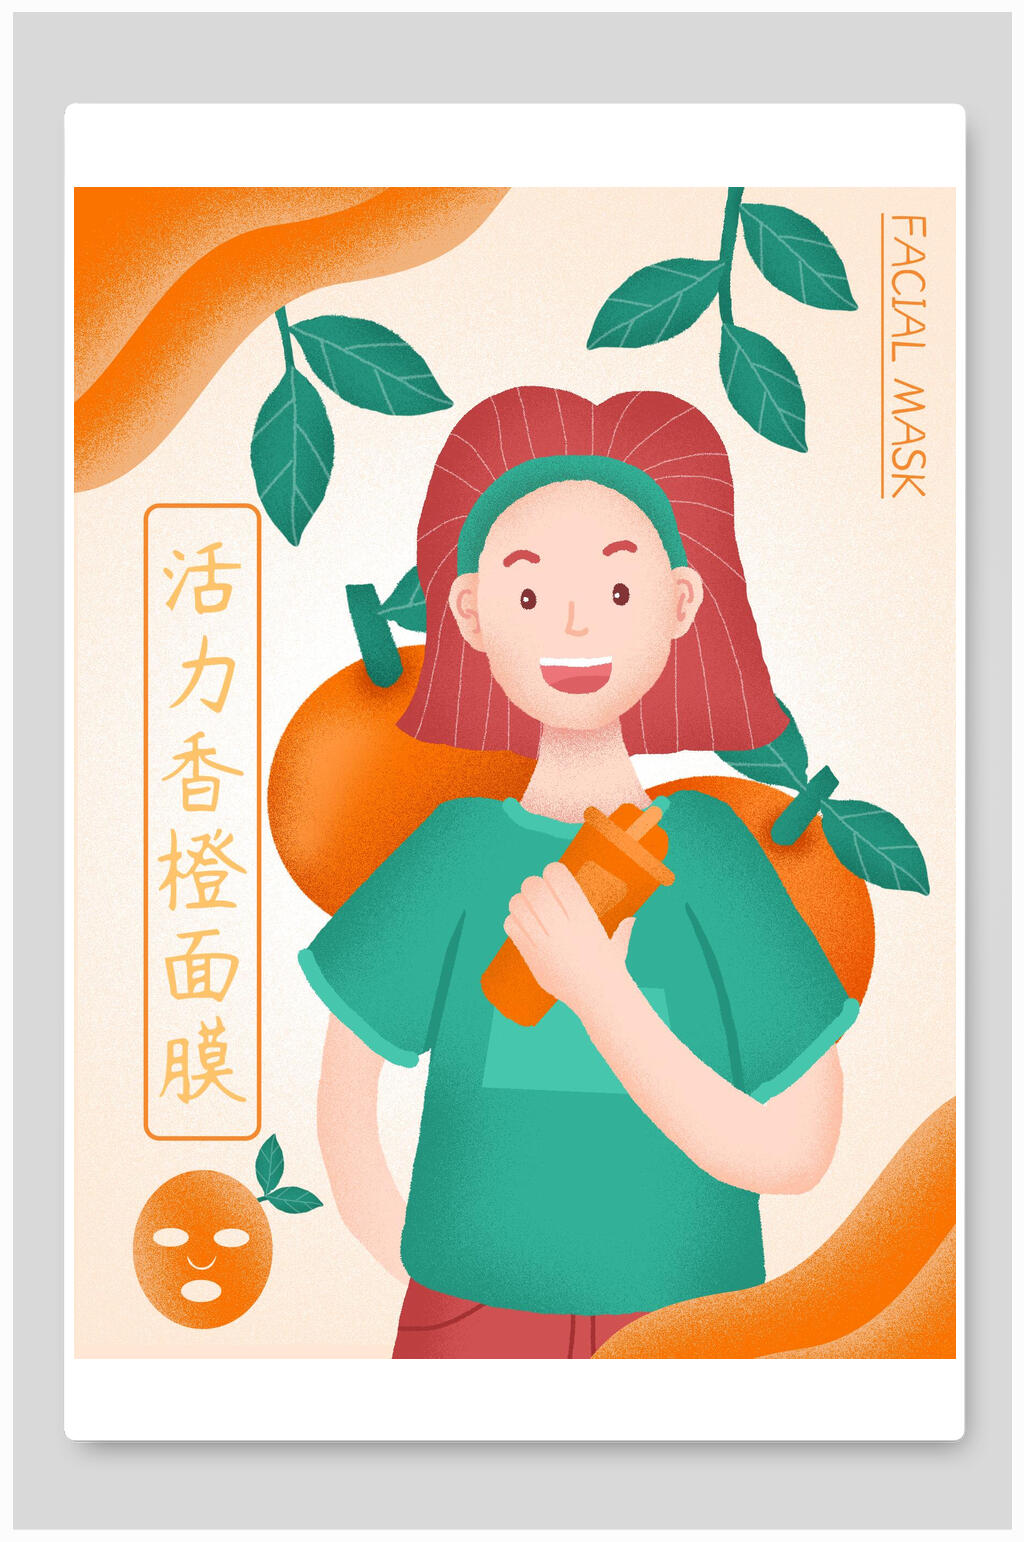 活香橙面膜海报包装设计